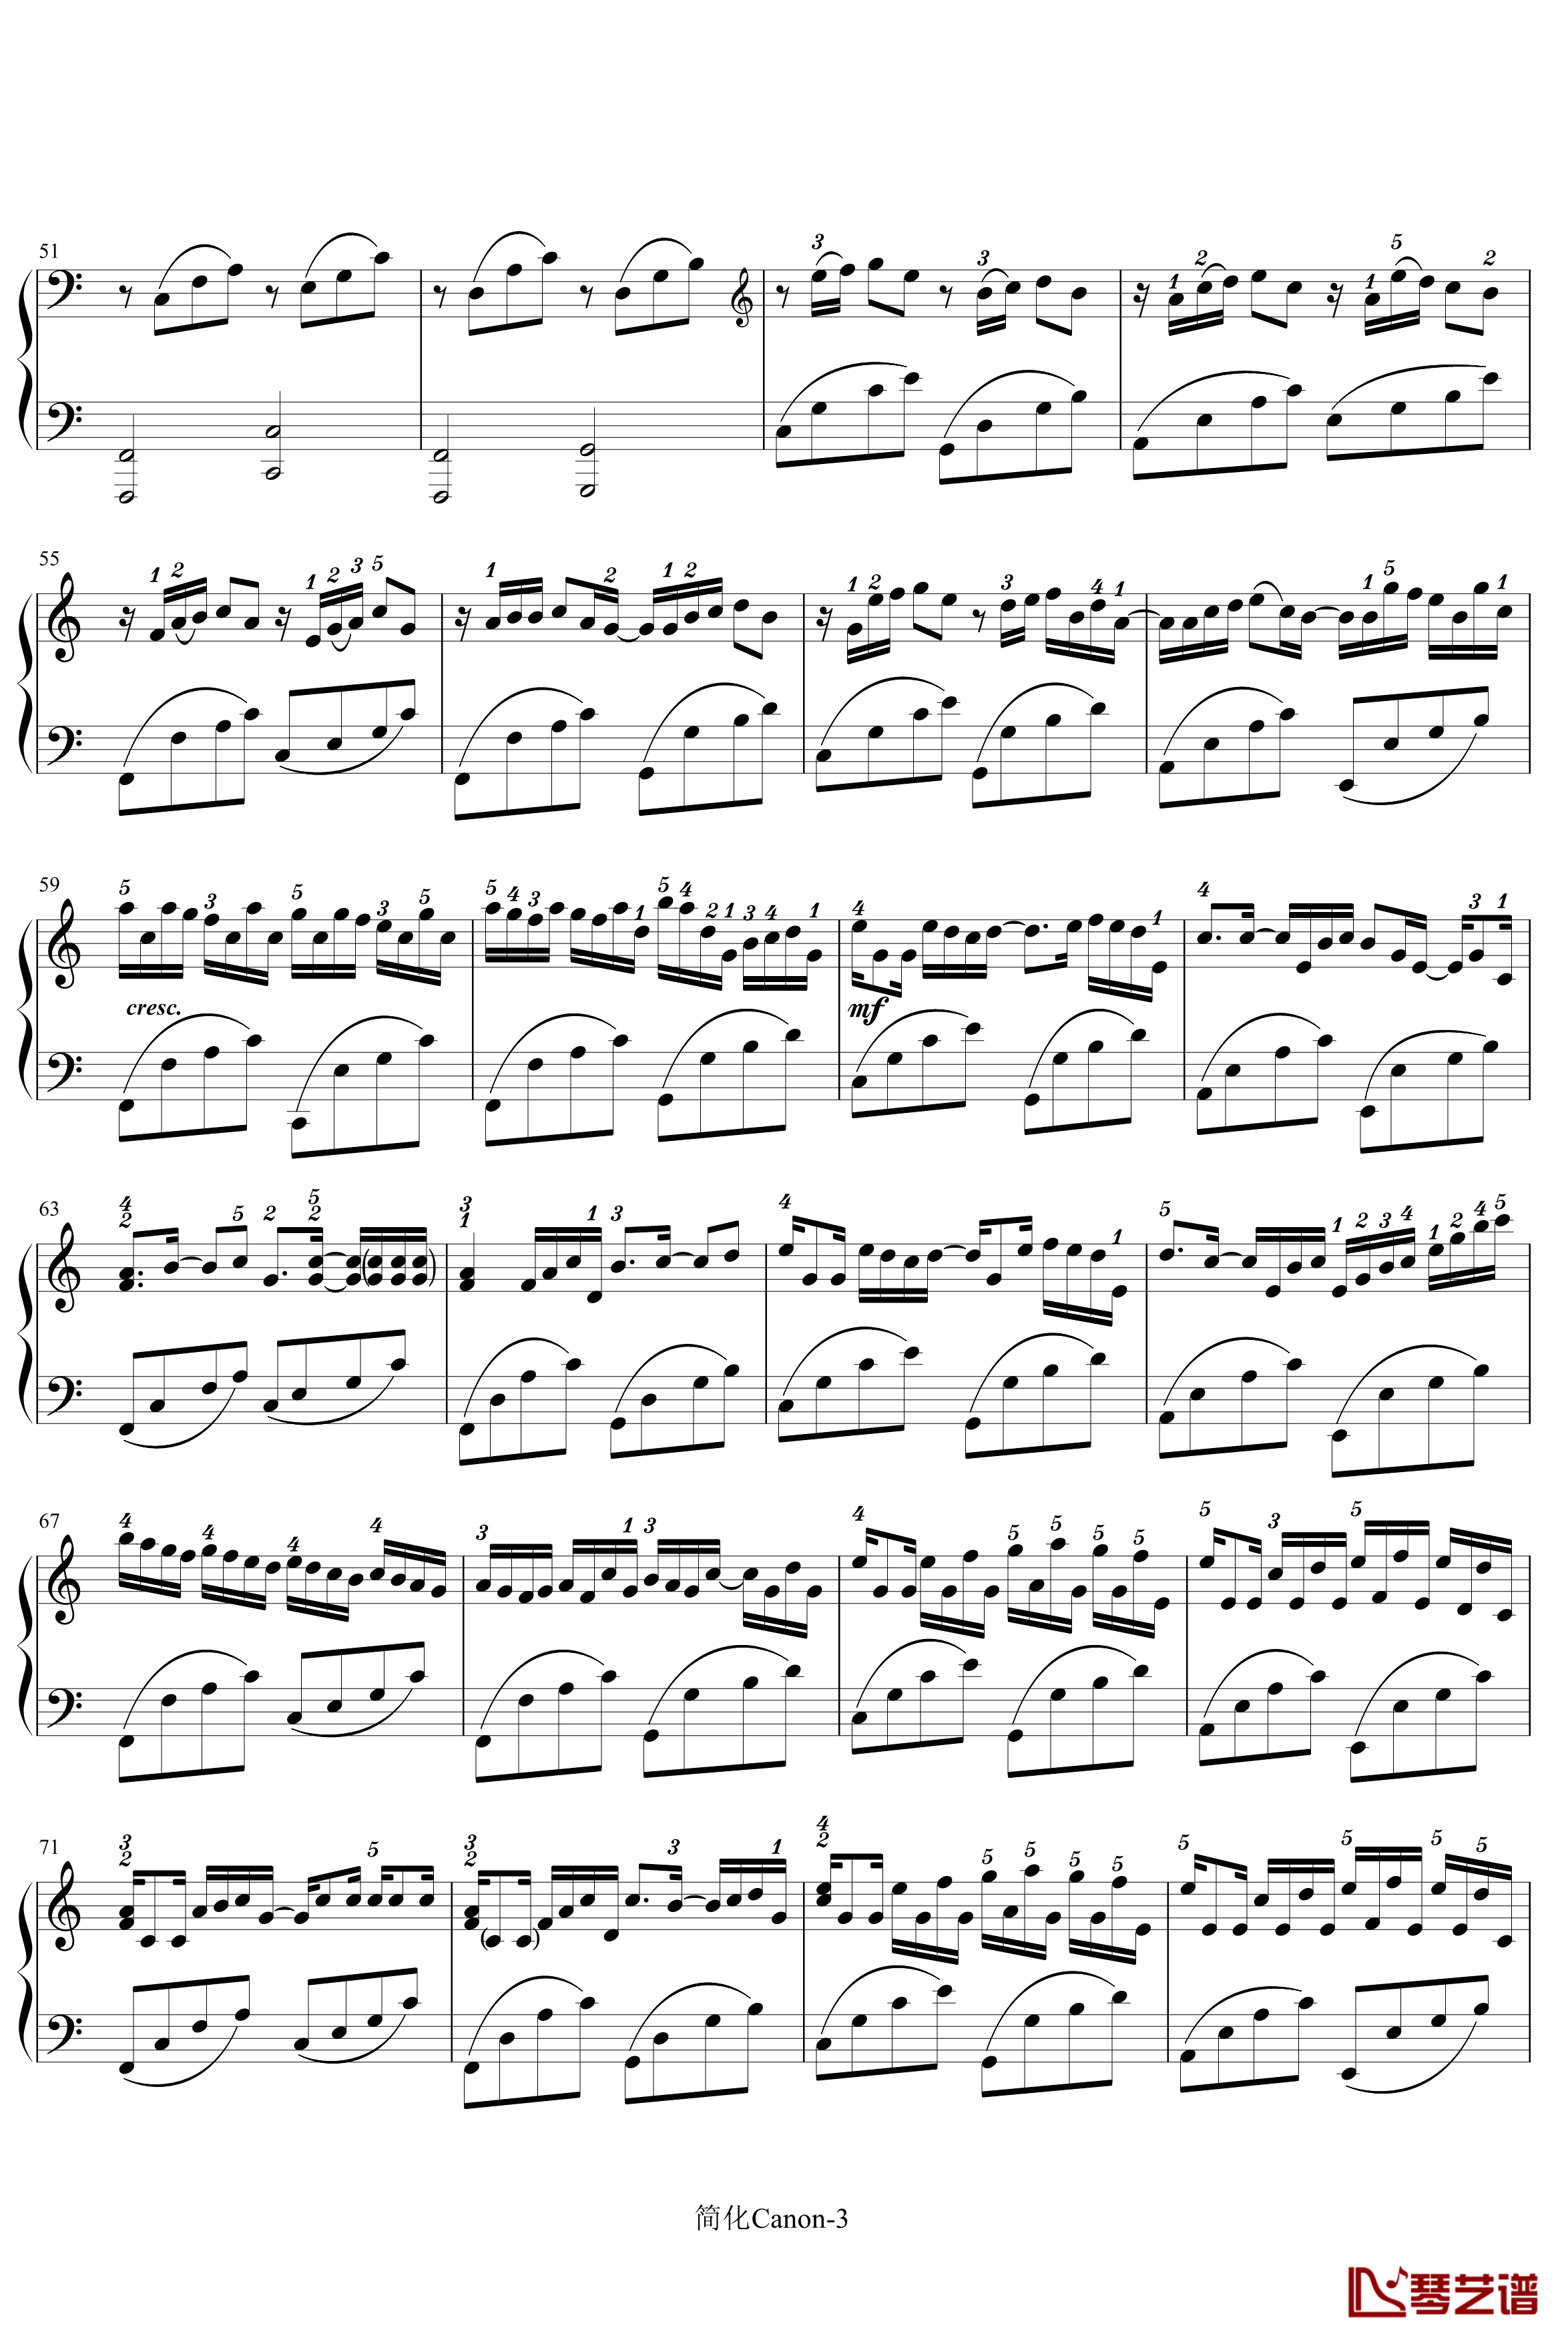 卡农-寒风钢琴谱-简化版-帕赫贝尔-Pachelbel3